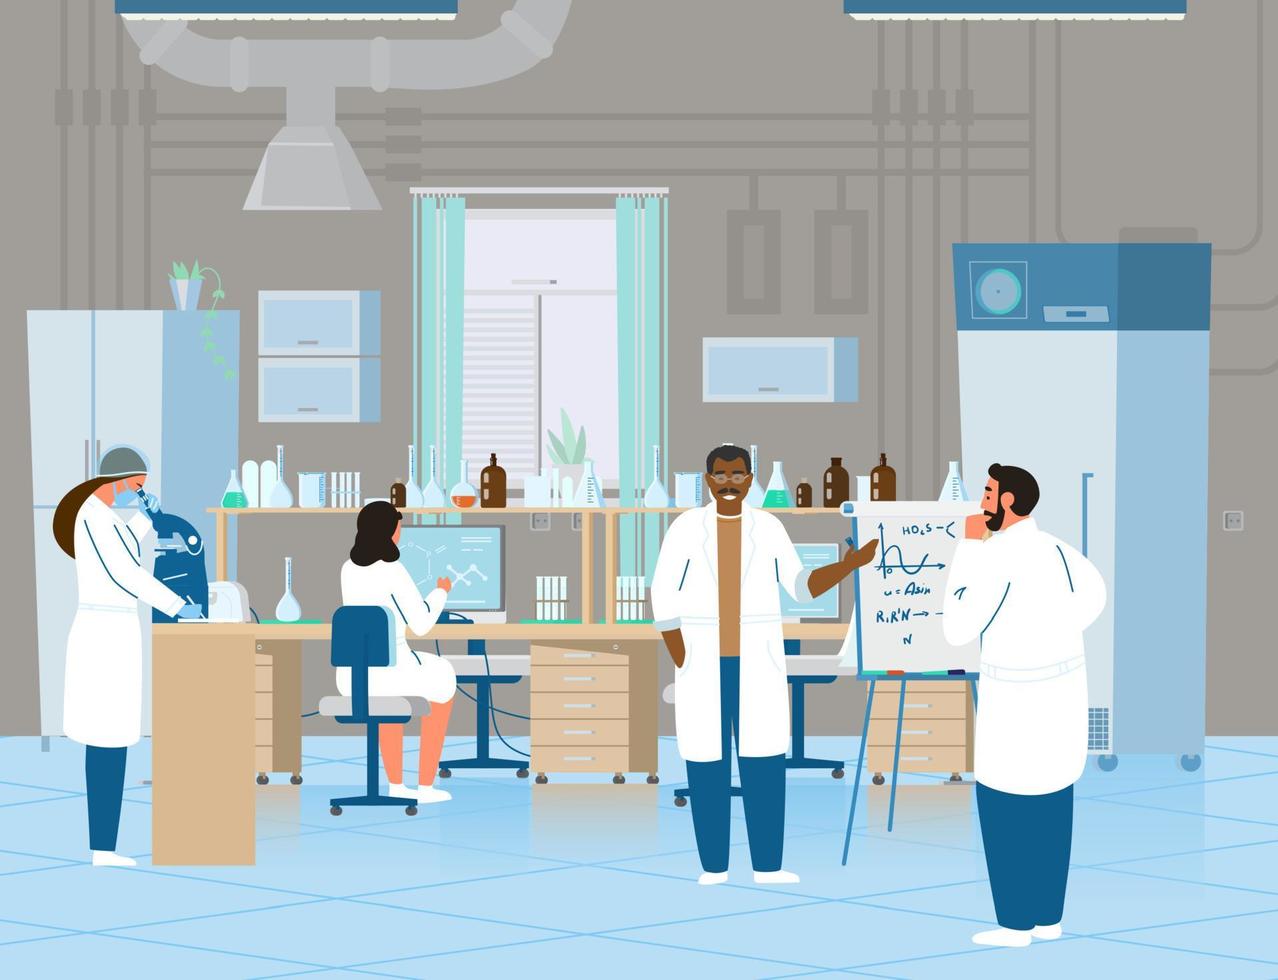 cientistas ou médicos homens e mulheres fazendo pesquisas em laboratório químico. interior do laboratório com equipamentos. ilustração vetorial plana. vetor